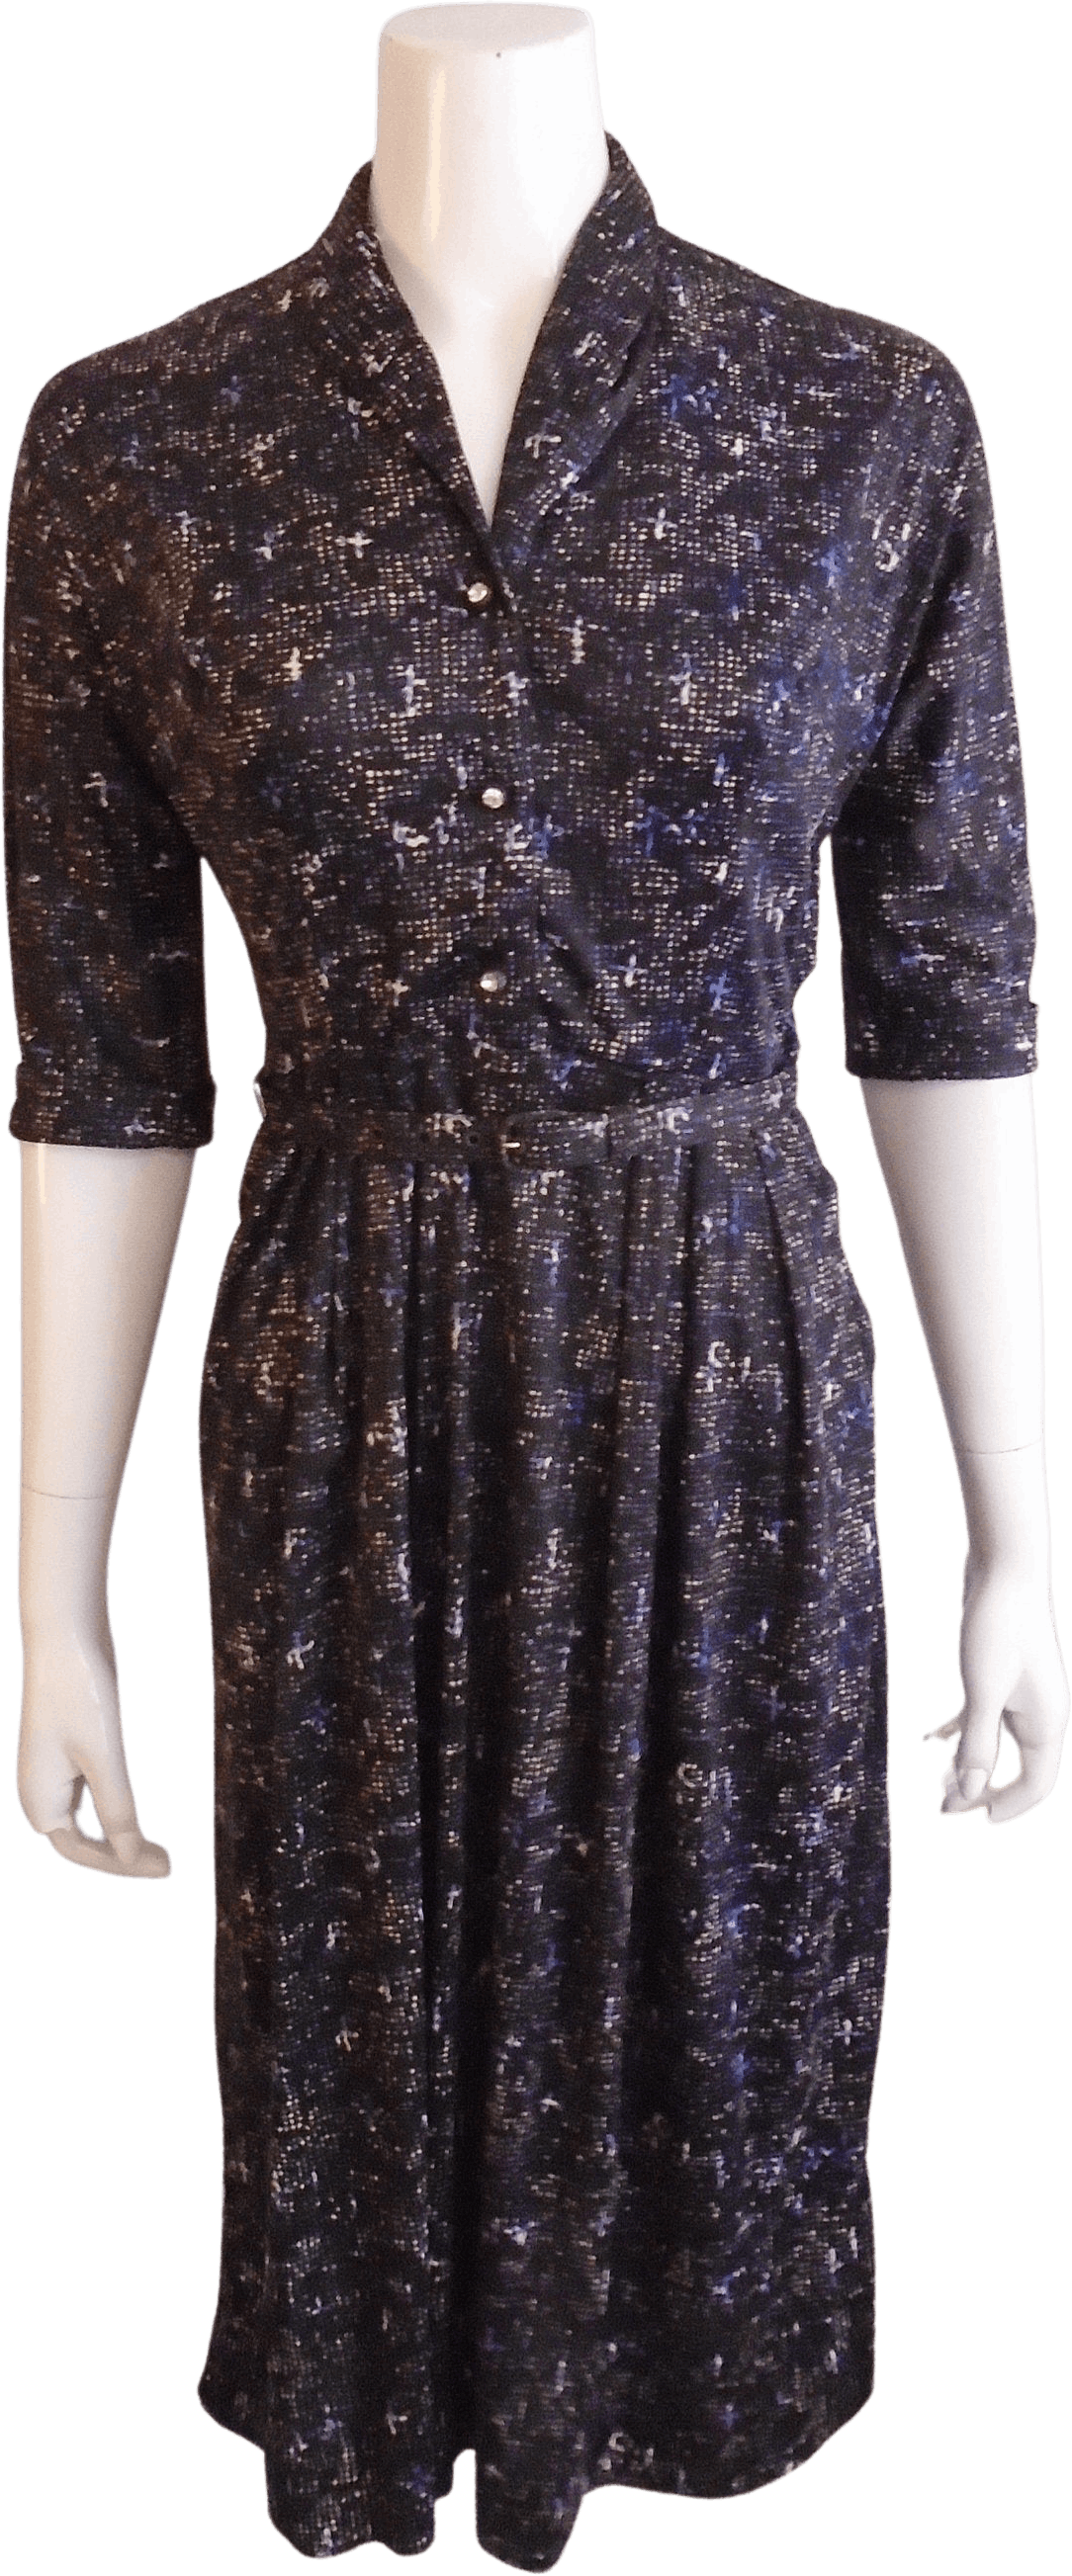 Vintage 50’s Black with Multicolor Speckled Belted Shirt Dress | Shop ...